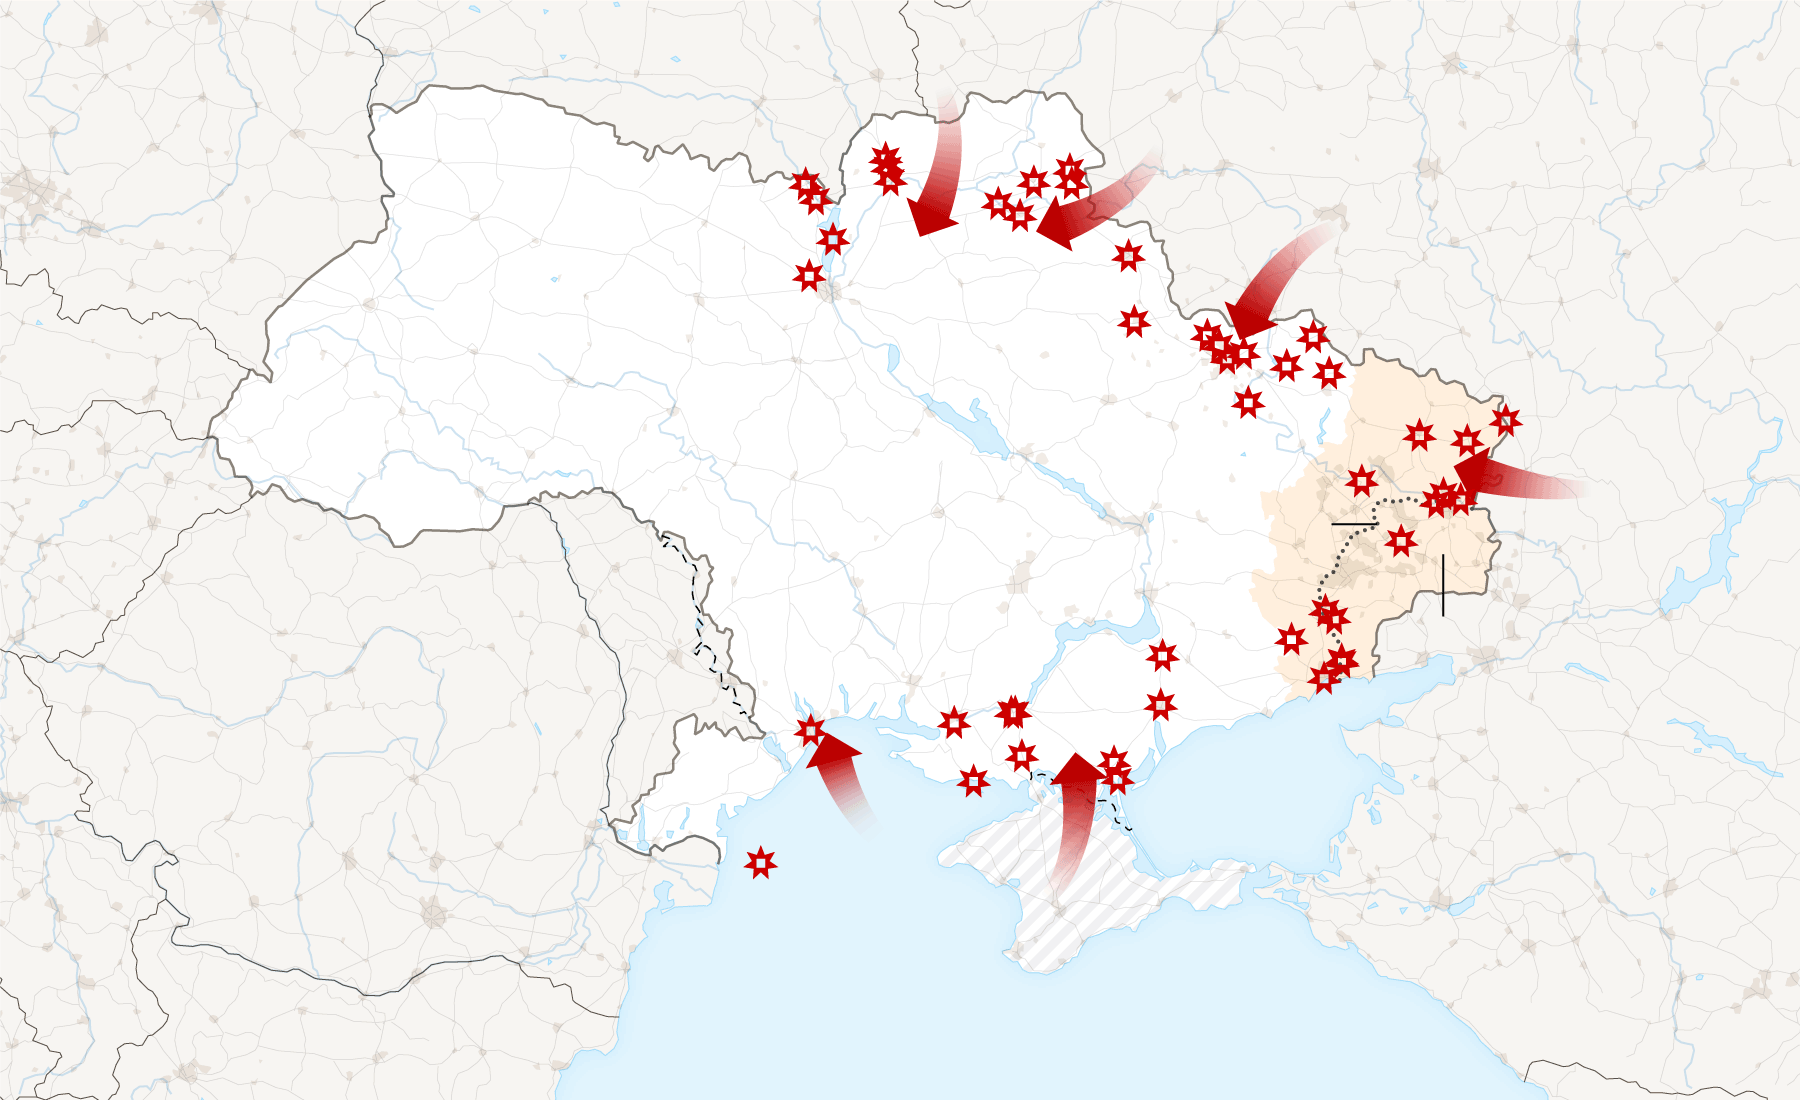 Где украина. Карта боевых действий на Украине Чернобыль. Карта расположения частей Украины. Захват территории Украины. Карта и территория.